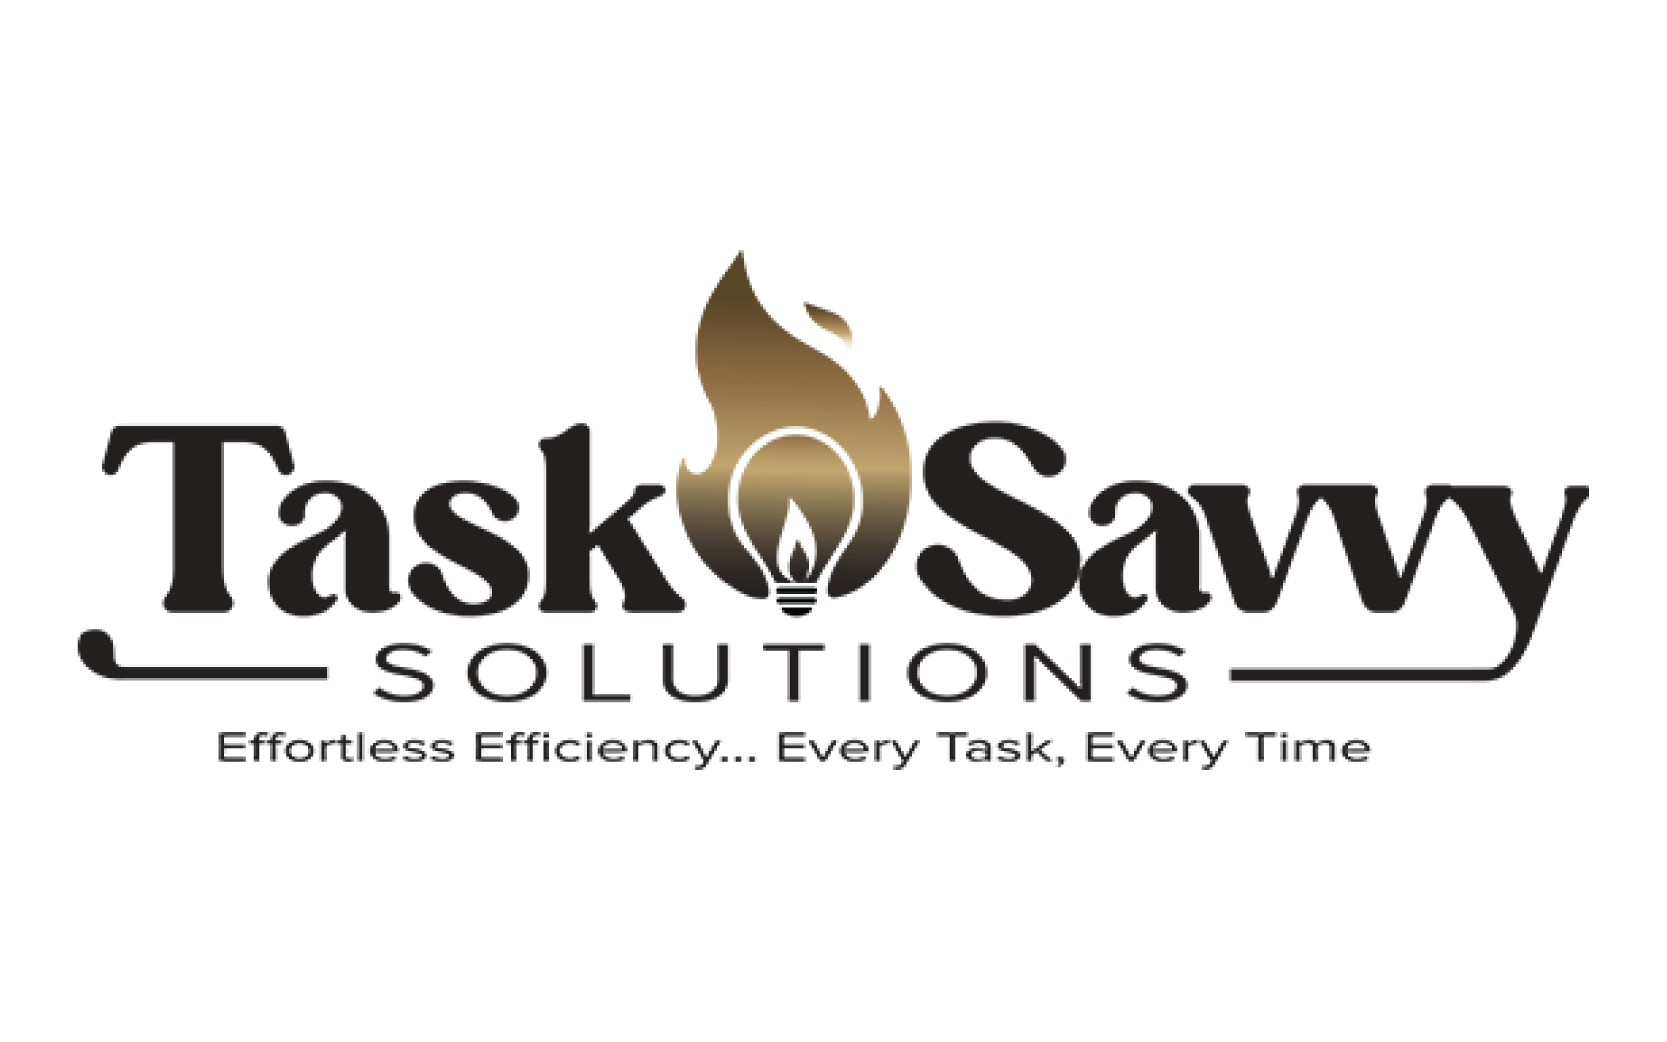 tasksavvy-solutions-logo